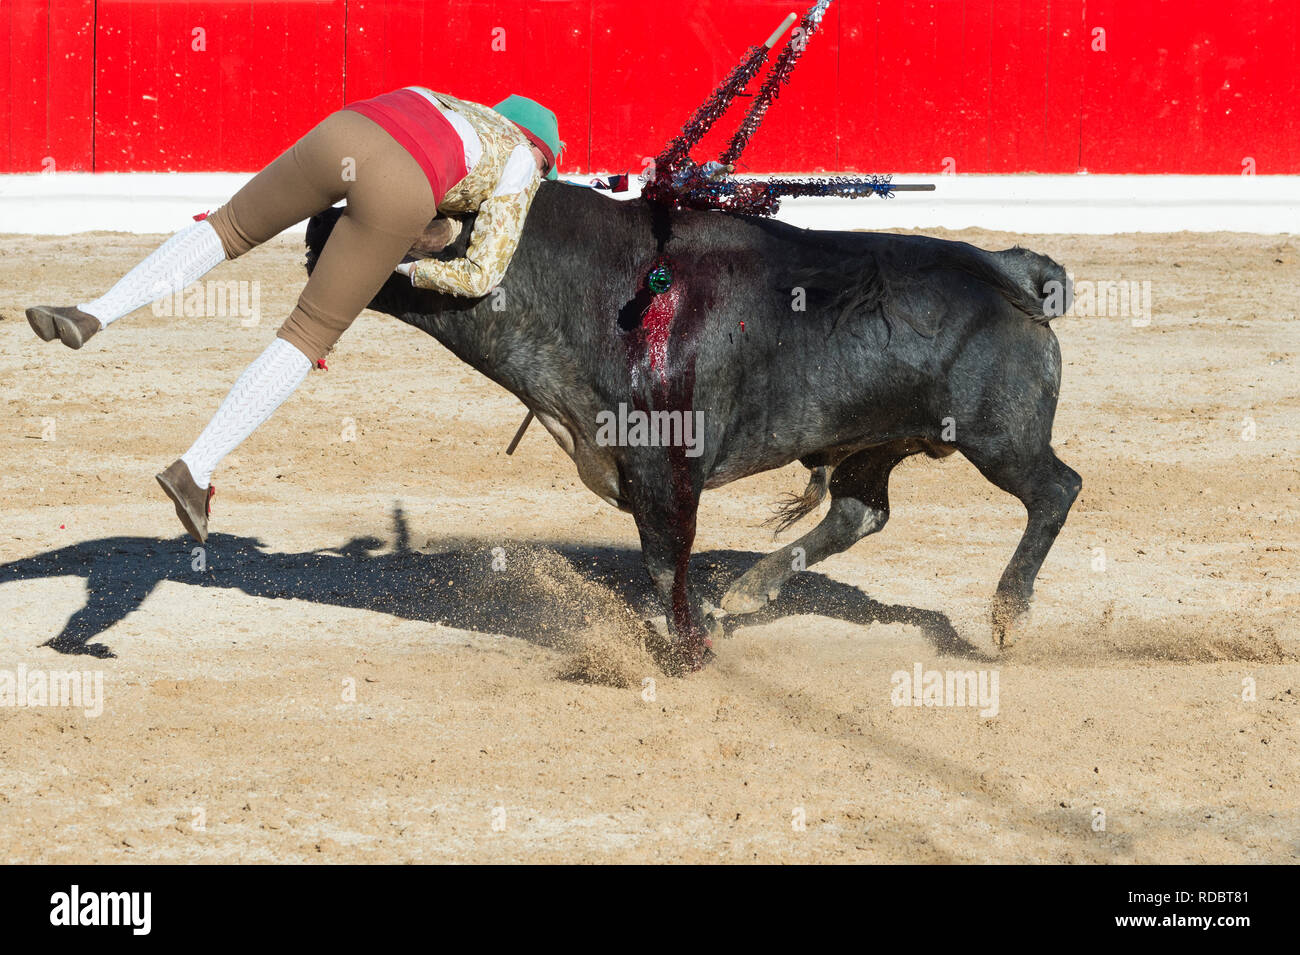 Stierkampf in Alcochete. Forcado anspruchsvolle ein Stier und versuchen, es zu stoppen, Stiere sind nicht während der stierkampf, Setúbal Alcochete, Provinz, Port getötet Stockfoto